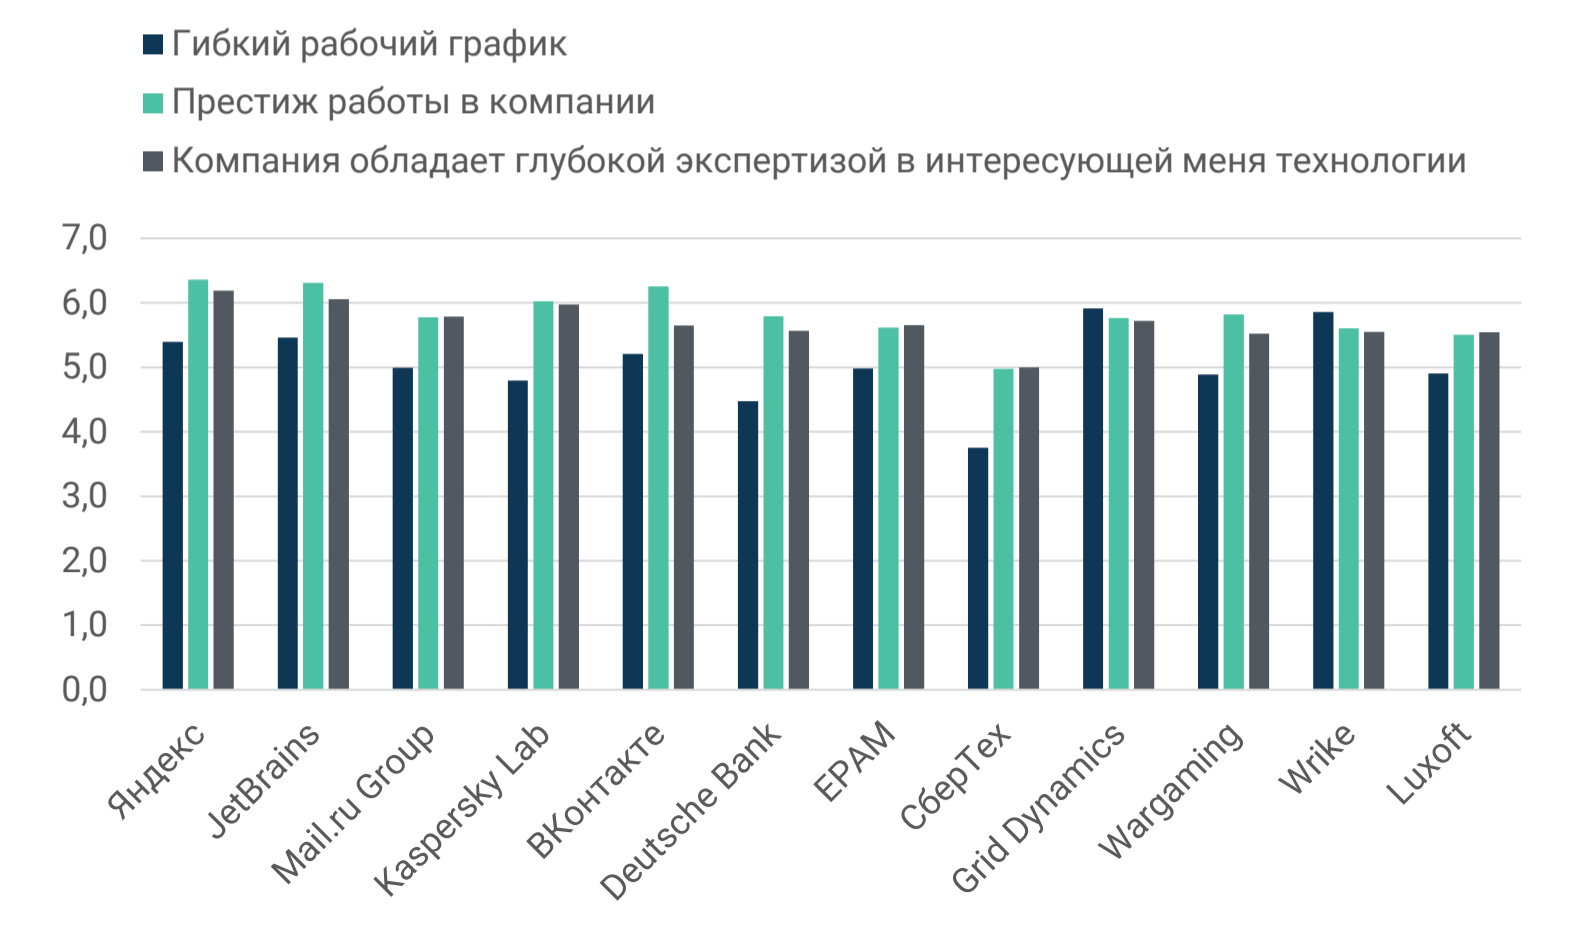 Рейтинг ИТ-работодателей Санкт-Петербурга и Москвы: результаты опроса разработчиков - 7